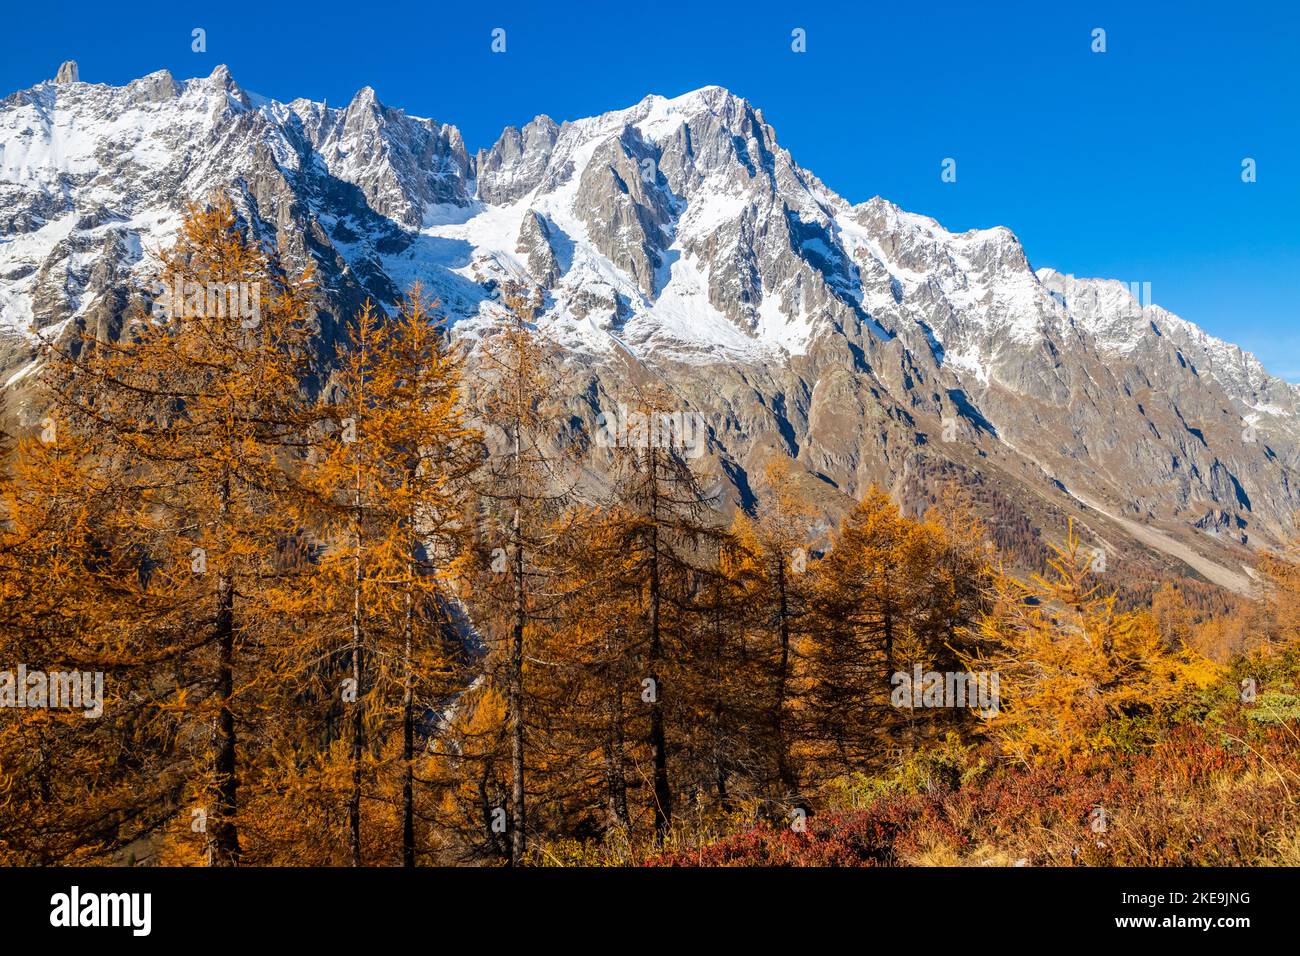 Blick auf Grandes Jorasses und das Mont Blanc-Massiv vom Weg zur Bergone Refuge im Ferret Valley im Herbst. Ferret Valley, Courmayeur, Aosta Bezirk, Stockfoto